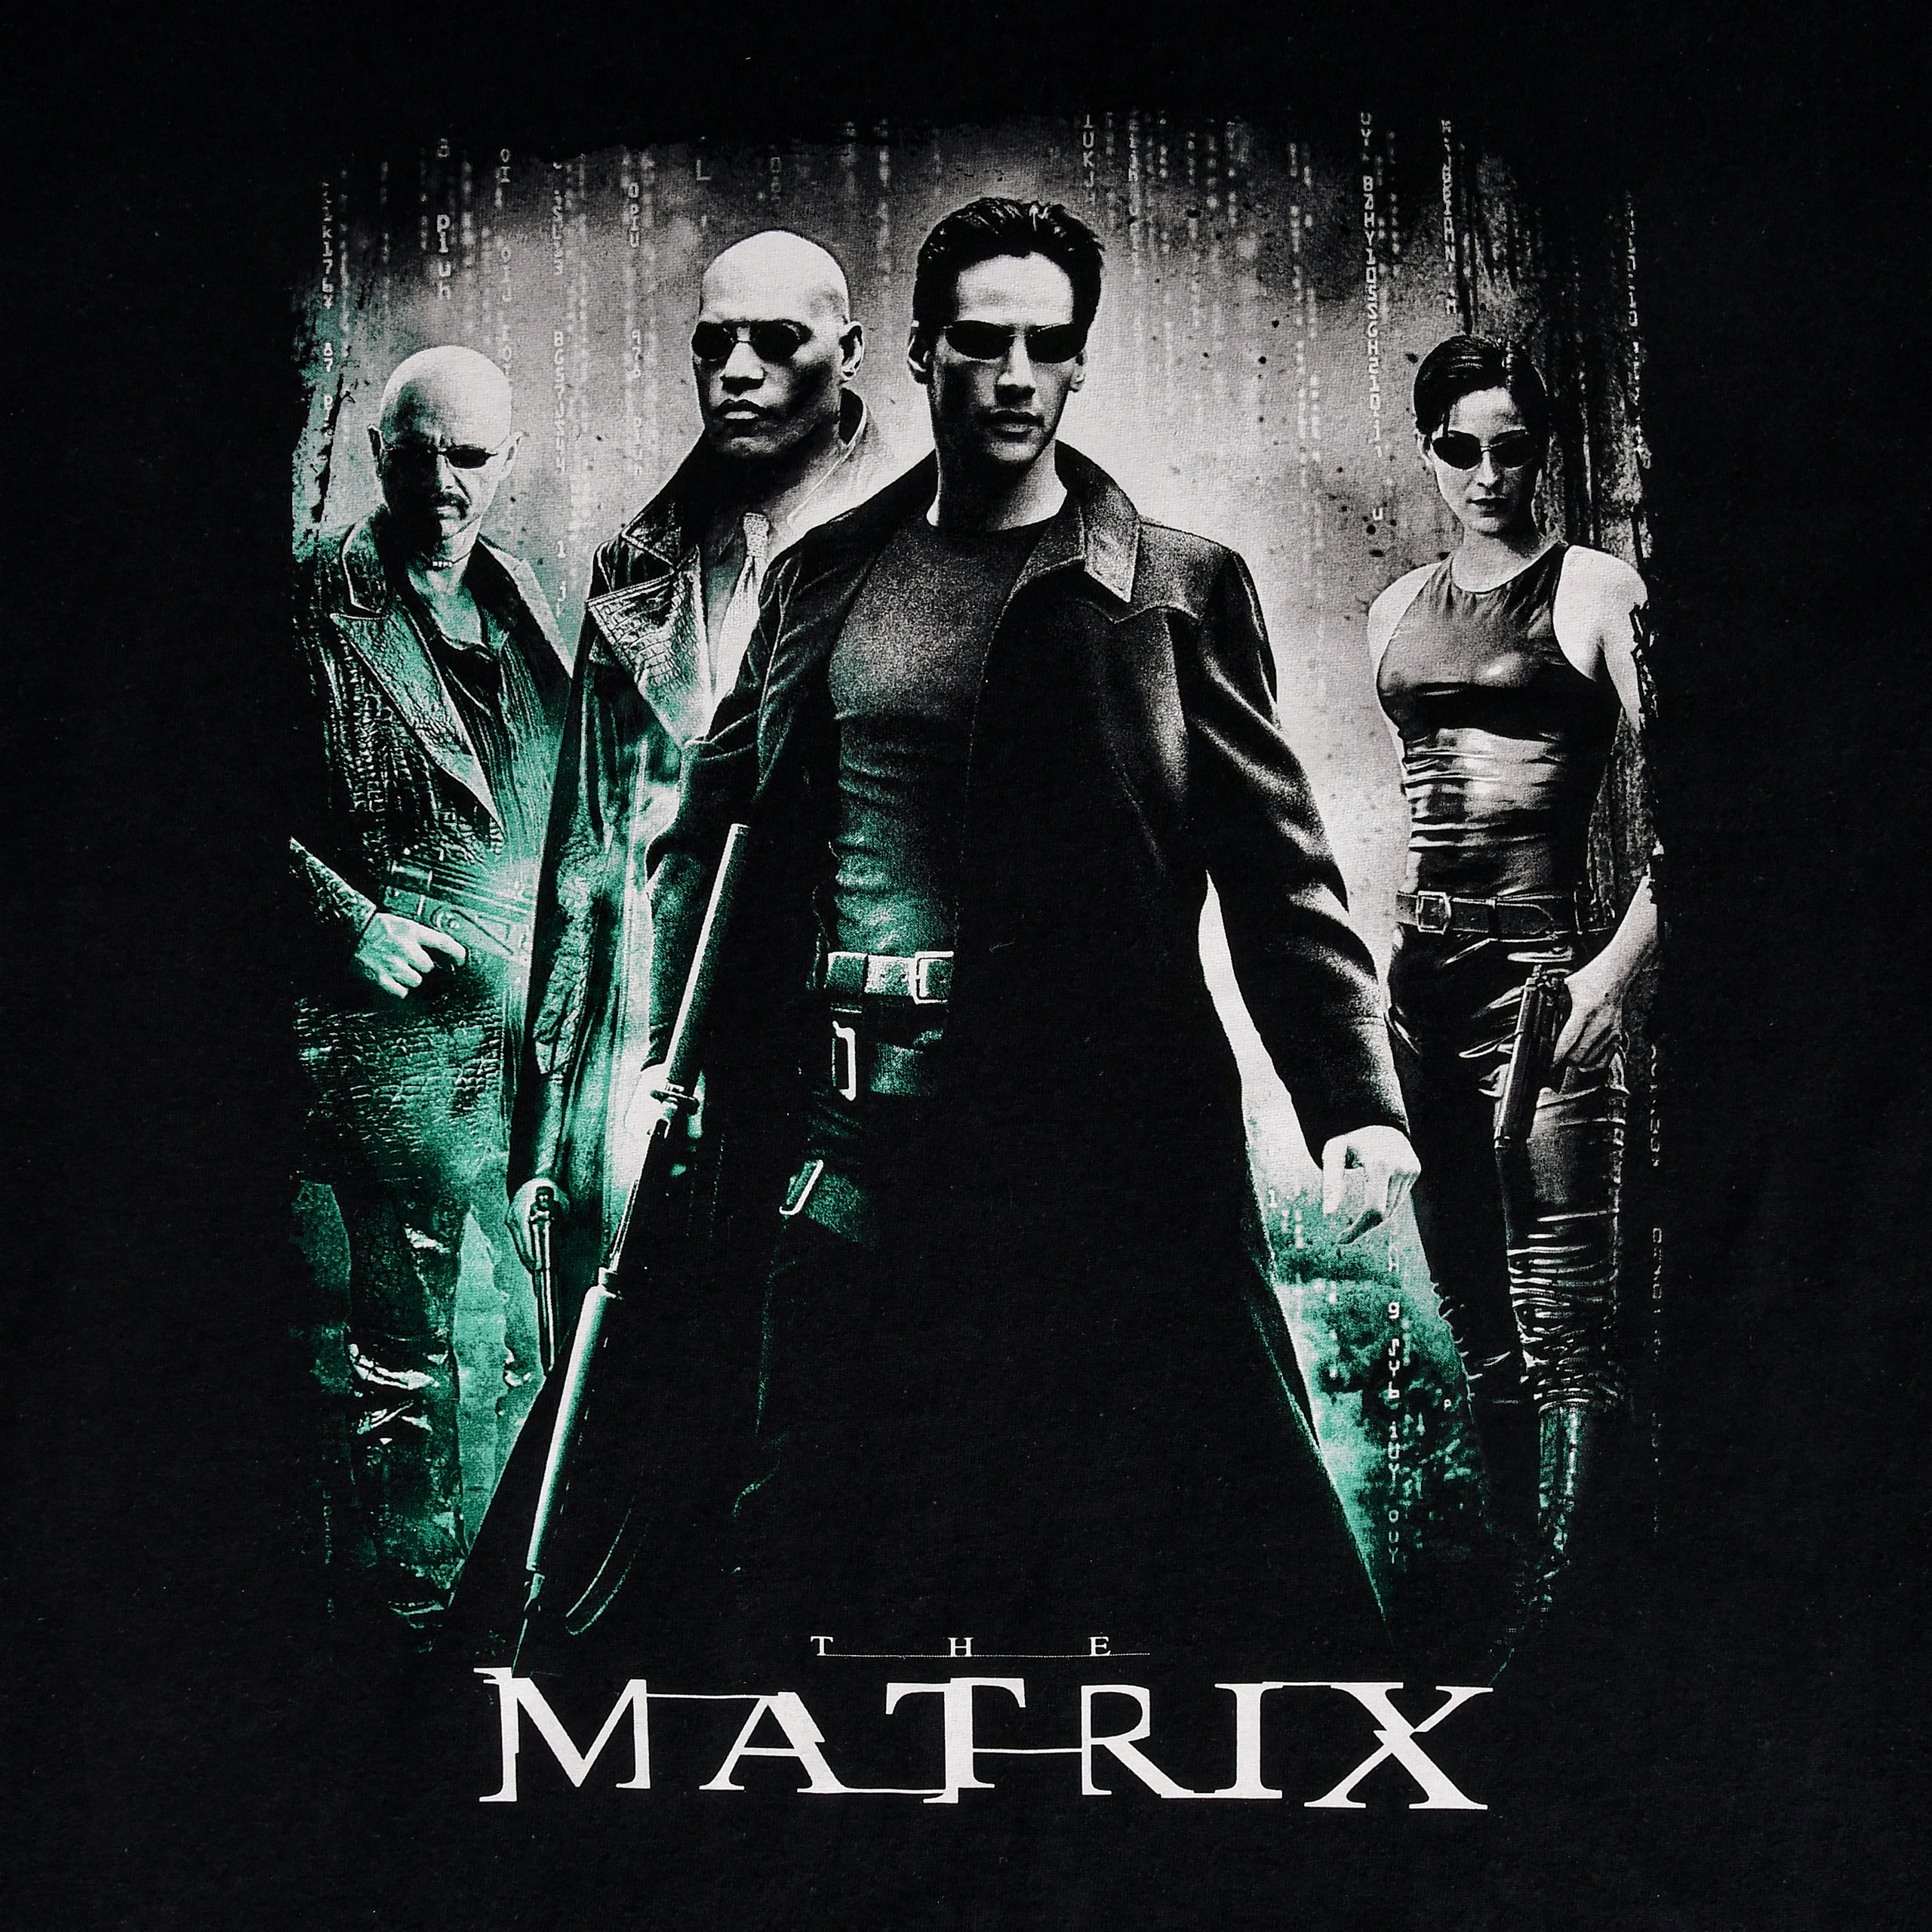 Matrix - Poster Art Redux T-Shirt schwarz